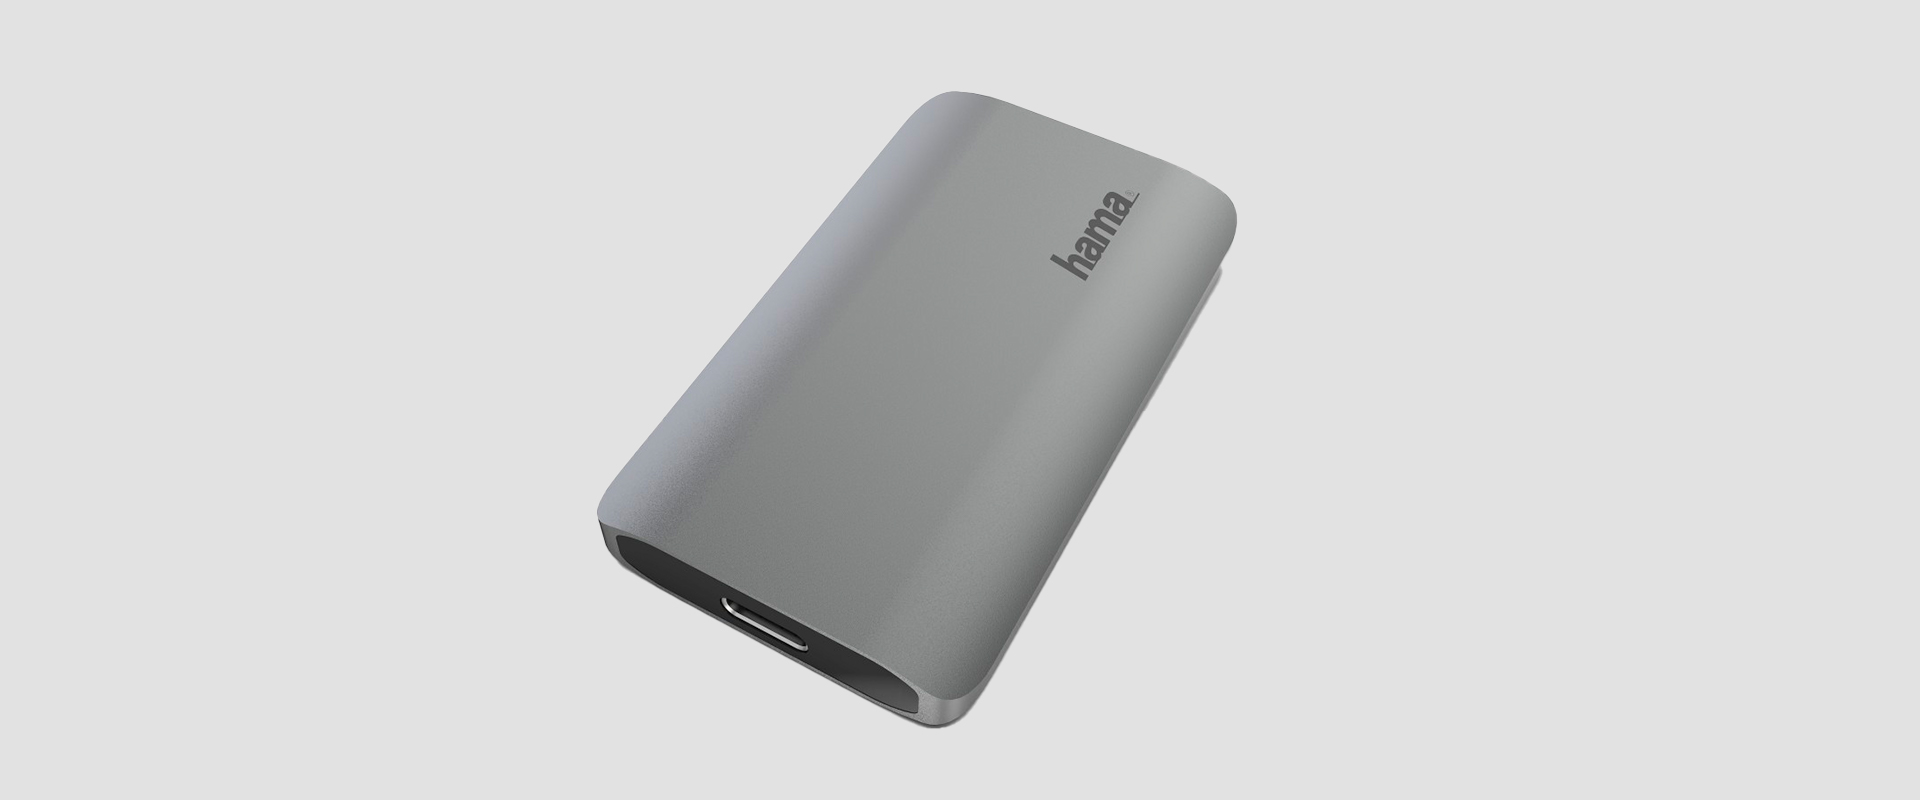 Poznaj dysk SSD Hama o pojemności 250 i 500 GB - Nowosciproduktowe.pl